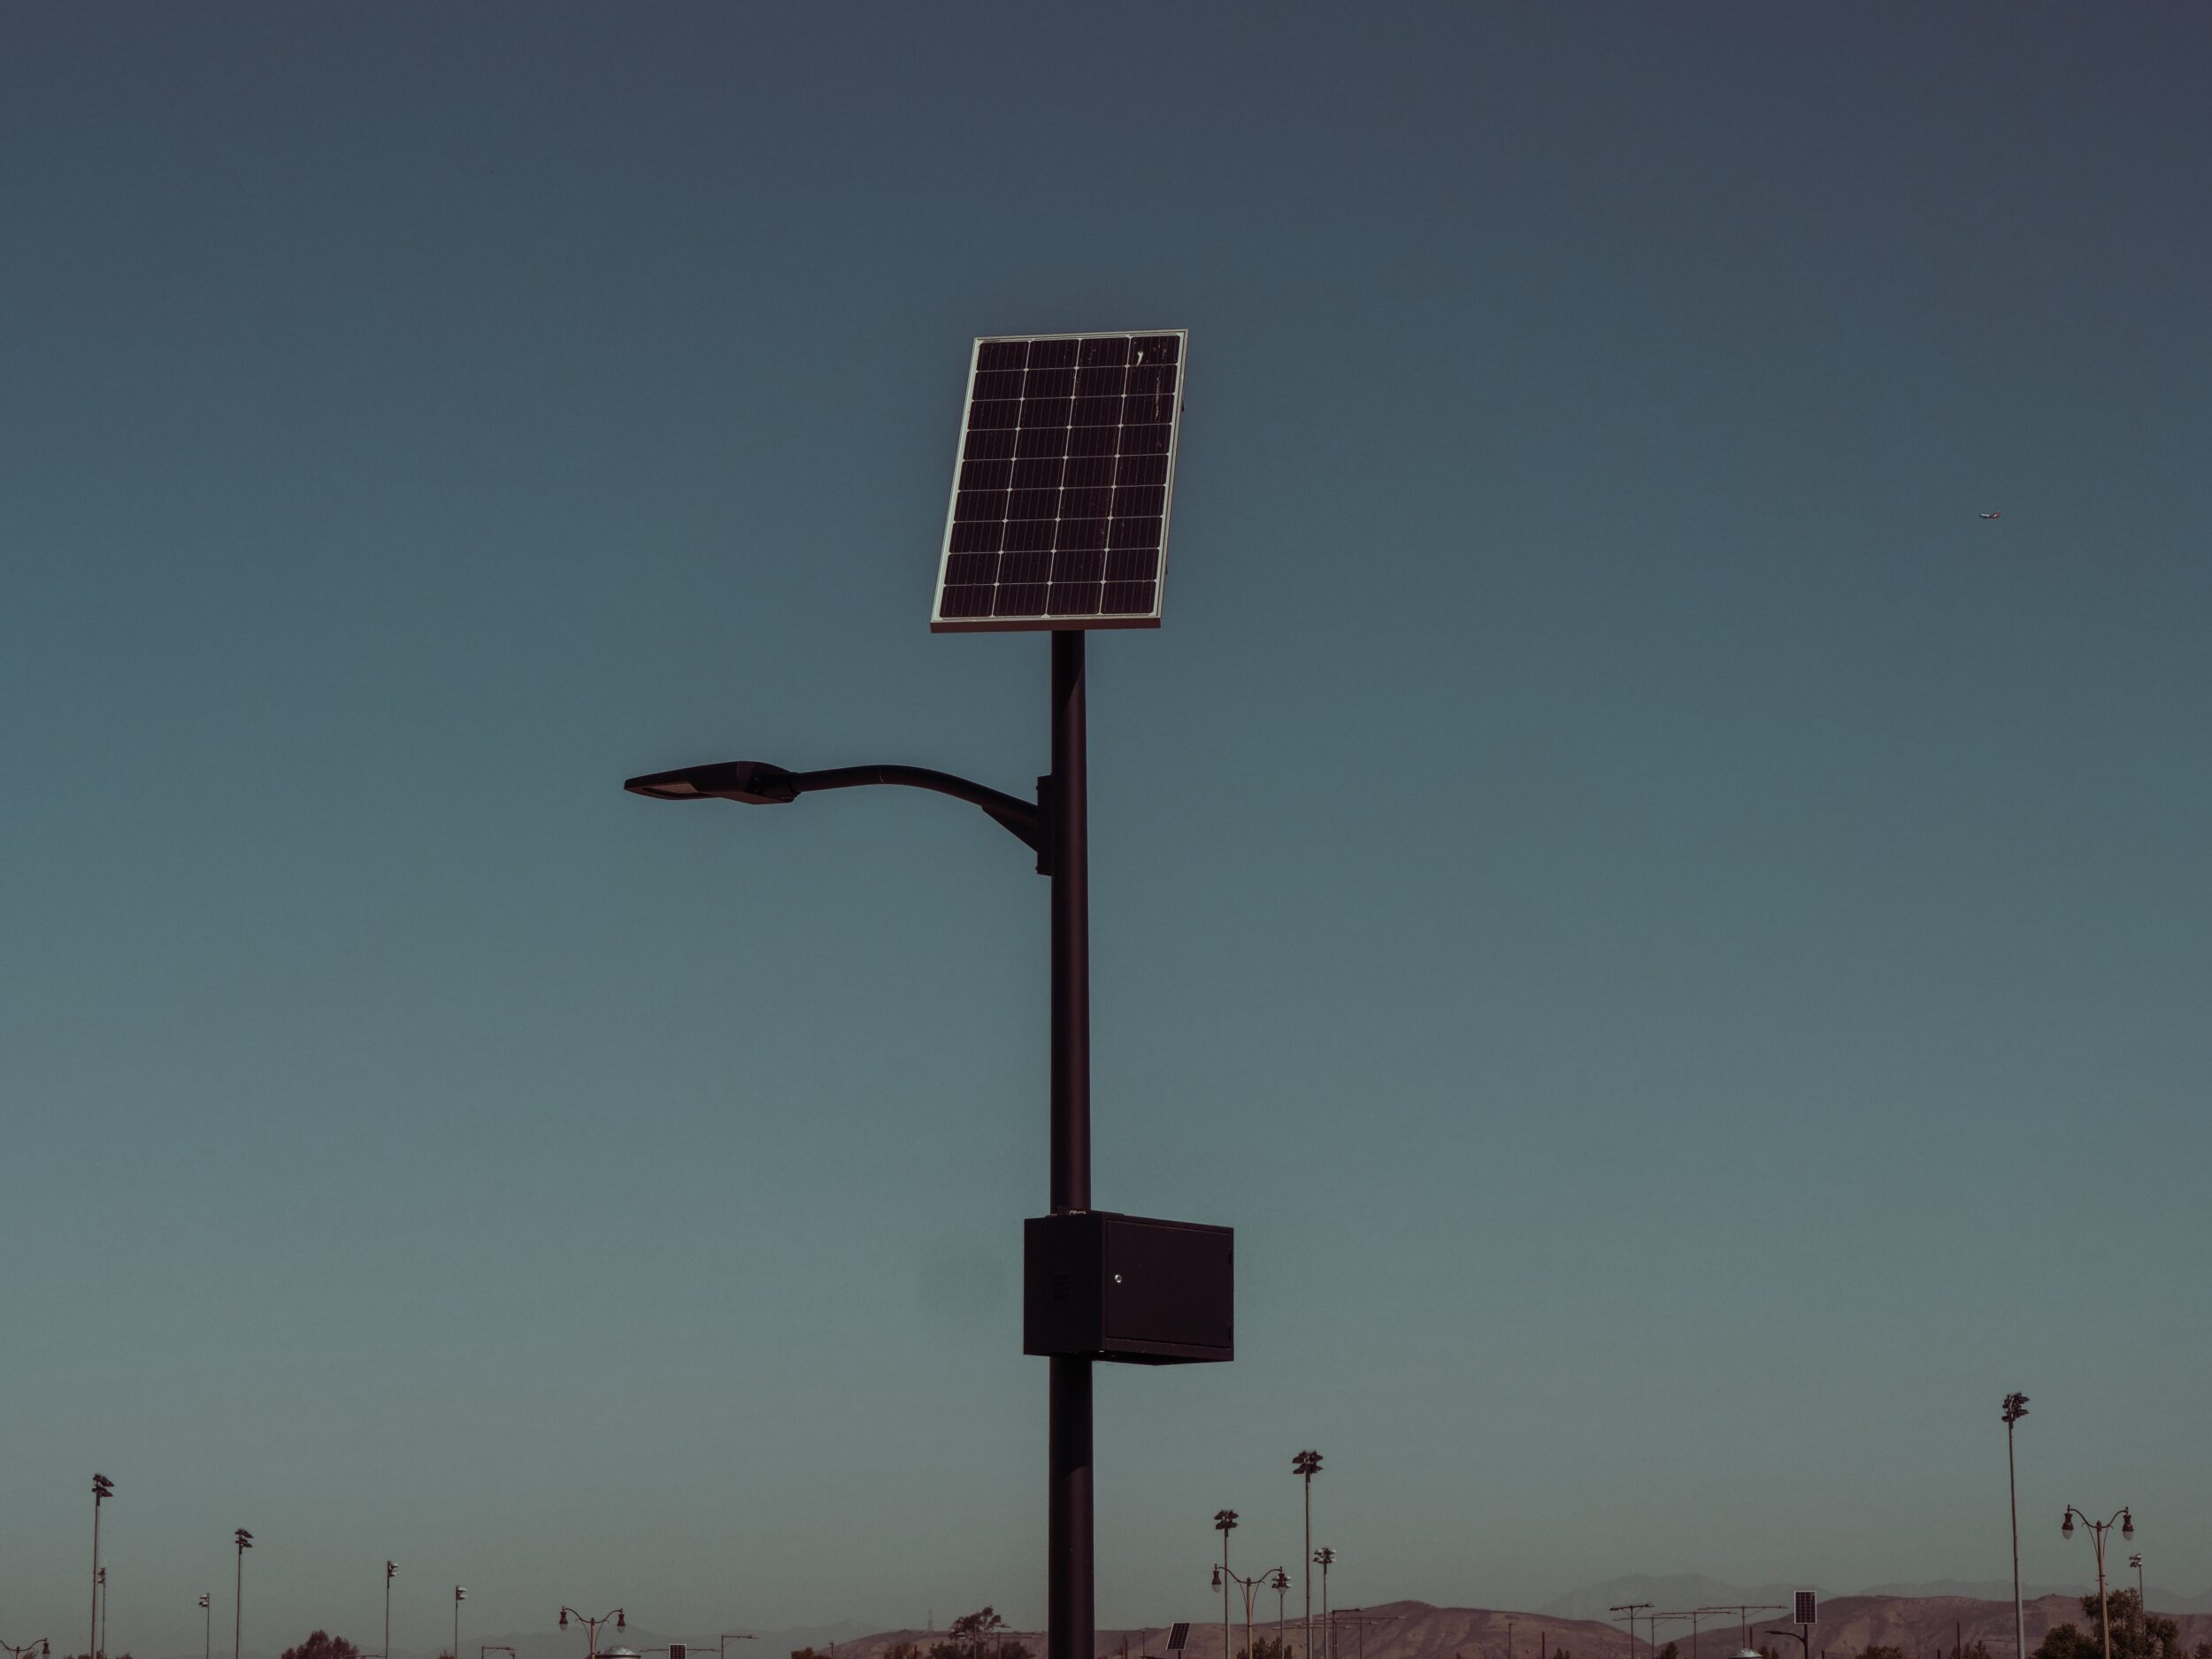 Les lampadaires solaires : une solution écologique pour d'éclairer